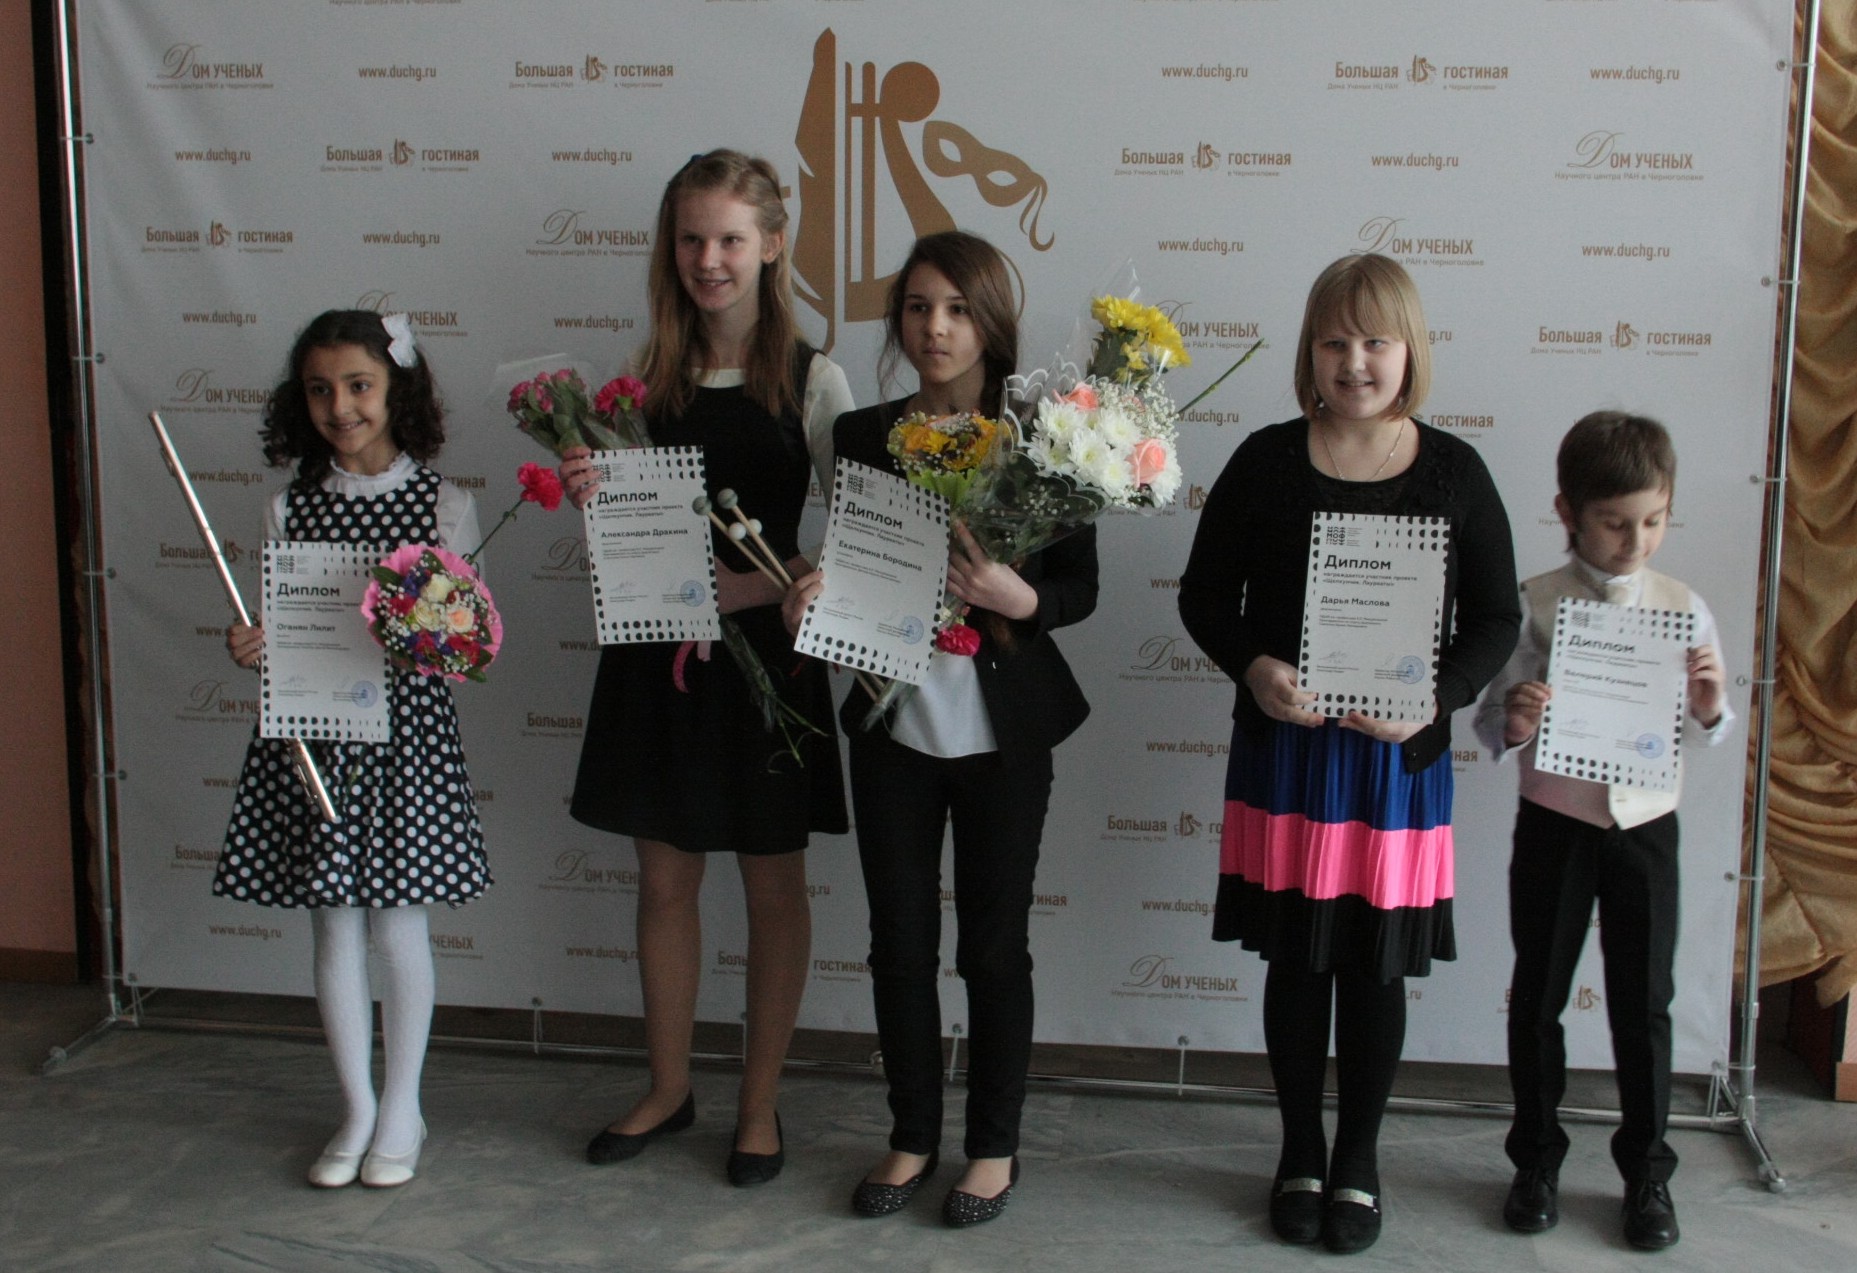 Award Winners of “Nutcracker” in Chernogolovka